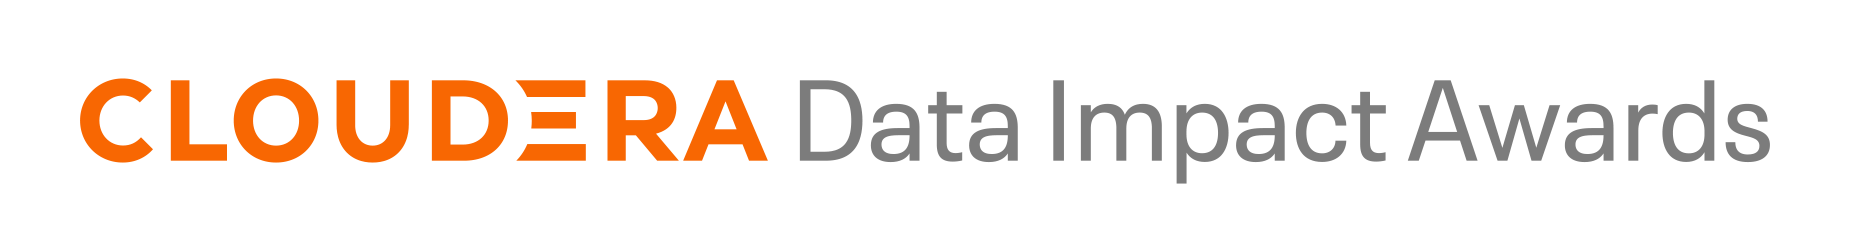 Cloudera Data Impact Awards logo